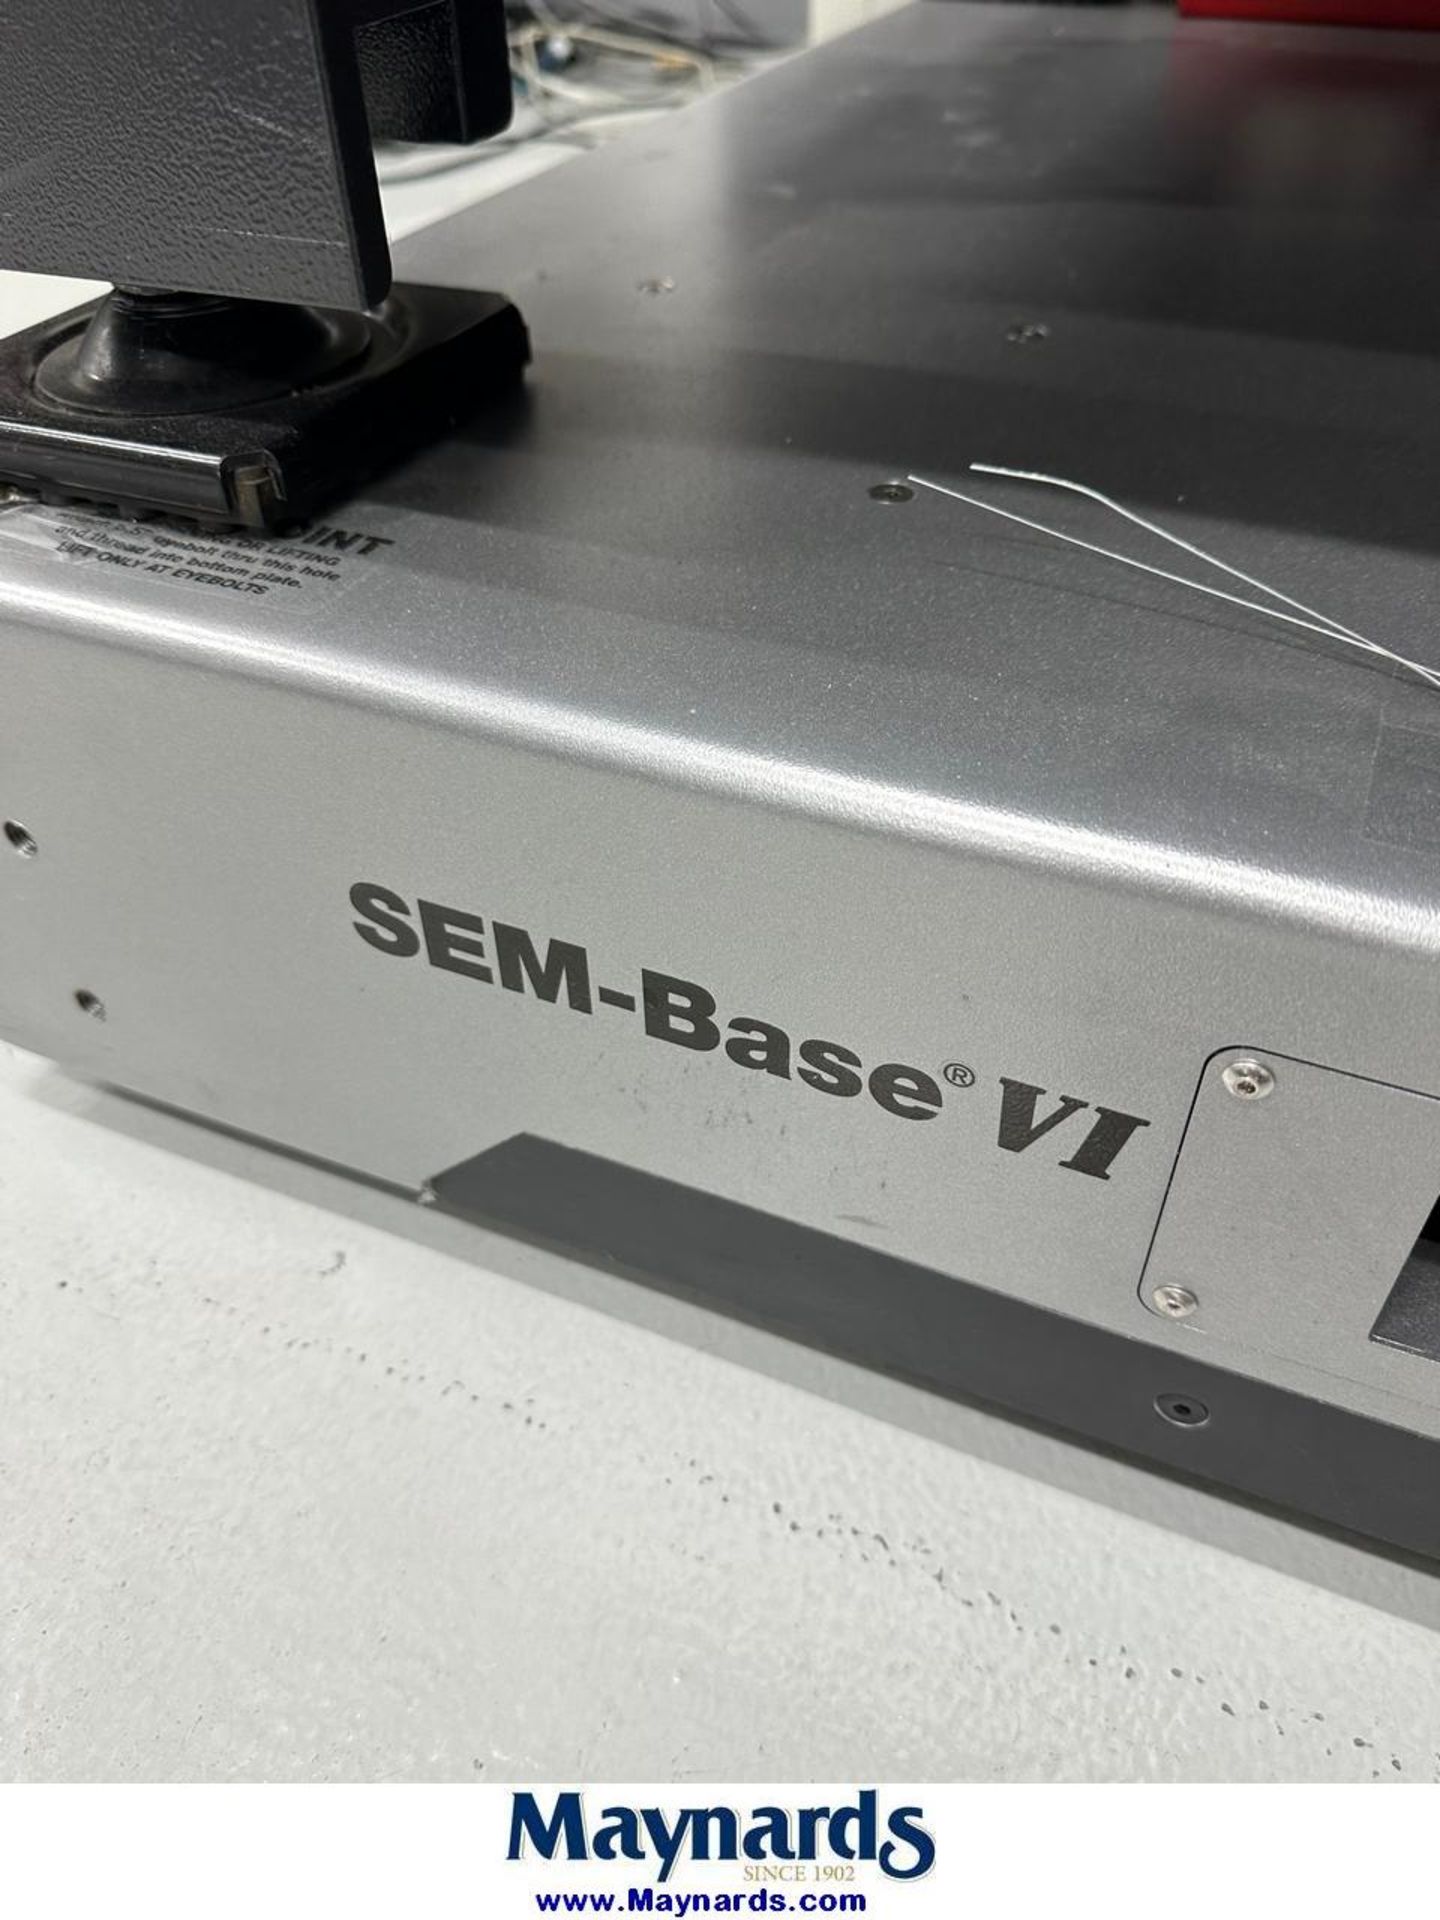 TMC SEM-Base VI Seismatic vibration table - Image 4 of 5